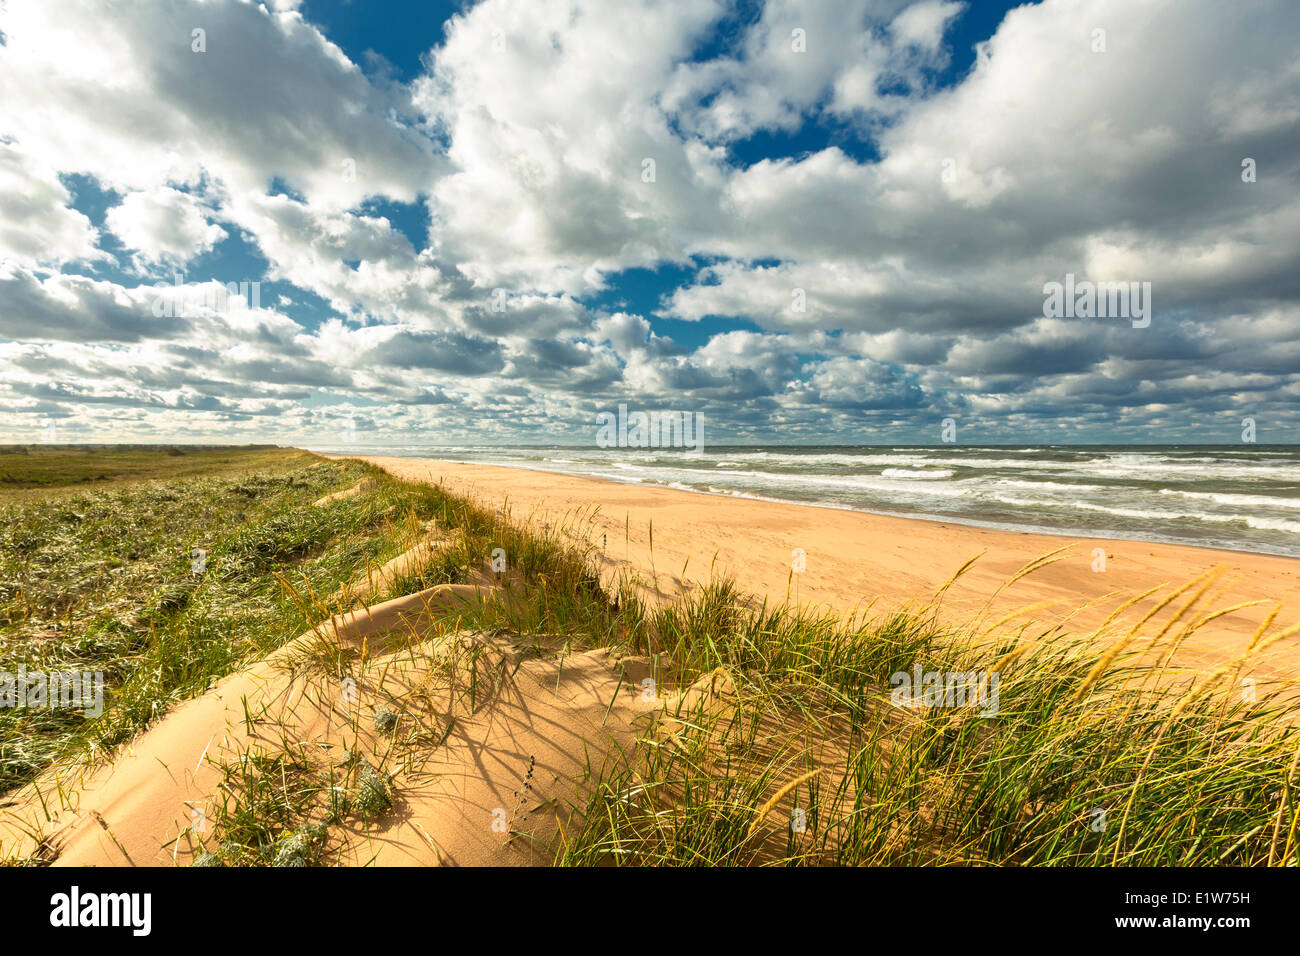 Dune de sable, Blooming Point Beach, parc national de l'Île du Prince-Édouard, Canada Banque D'Images